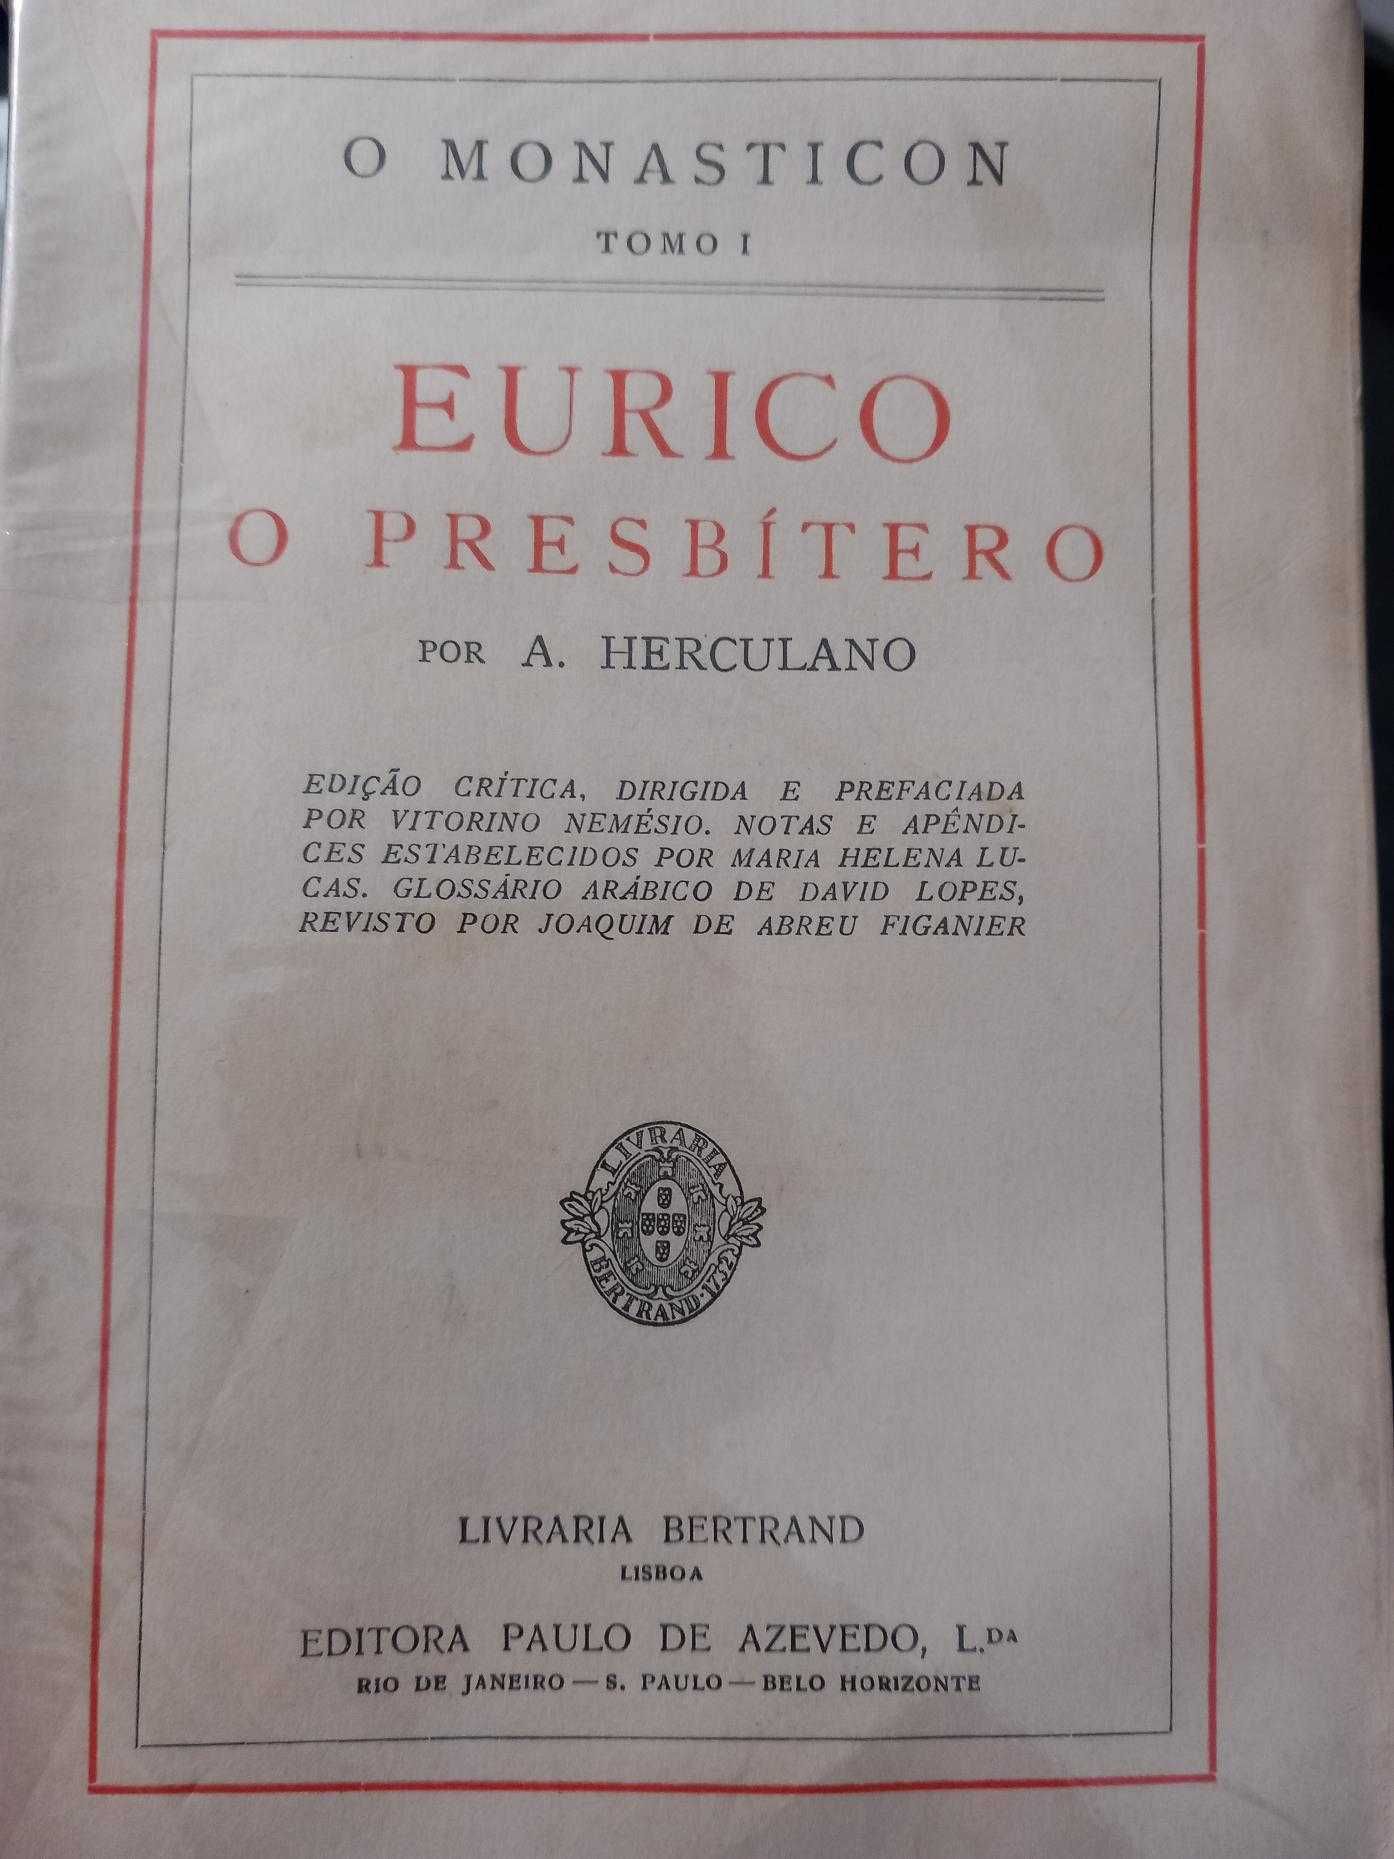 Alexandre Herculano, Eurico, o presbítero